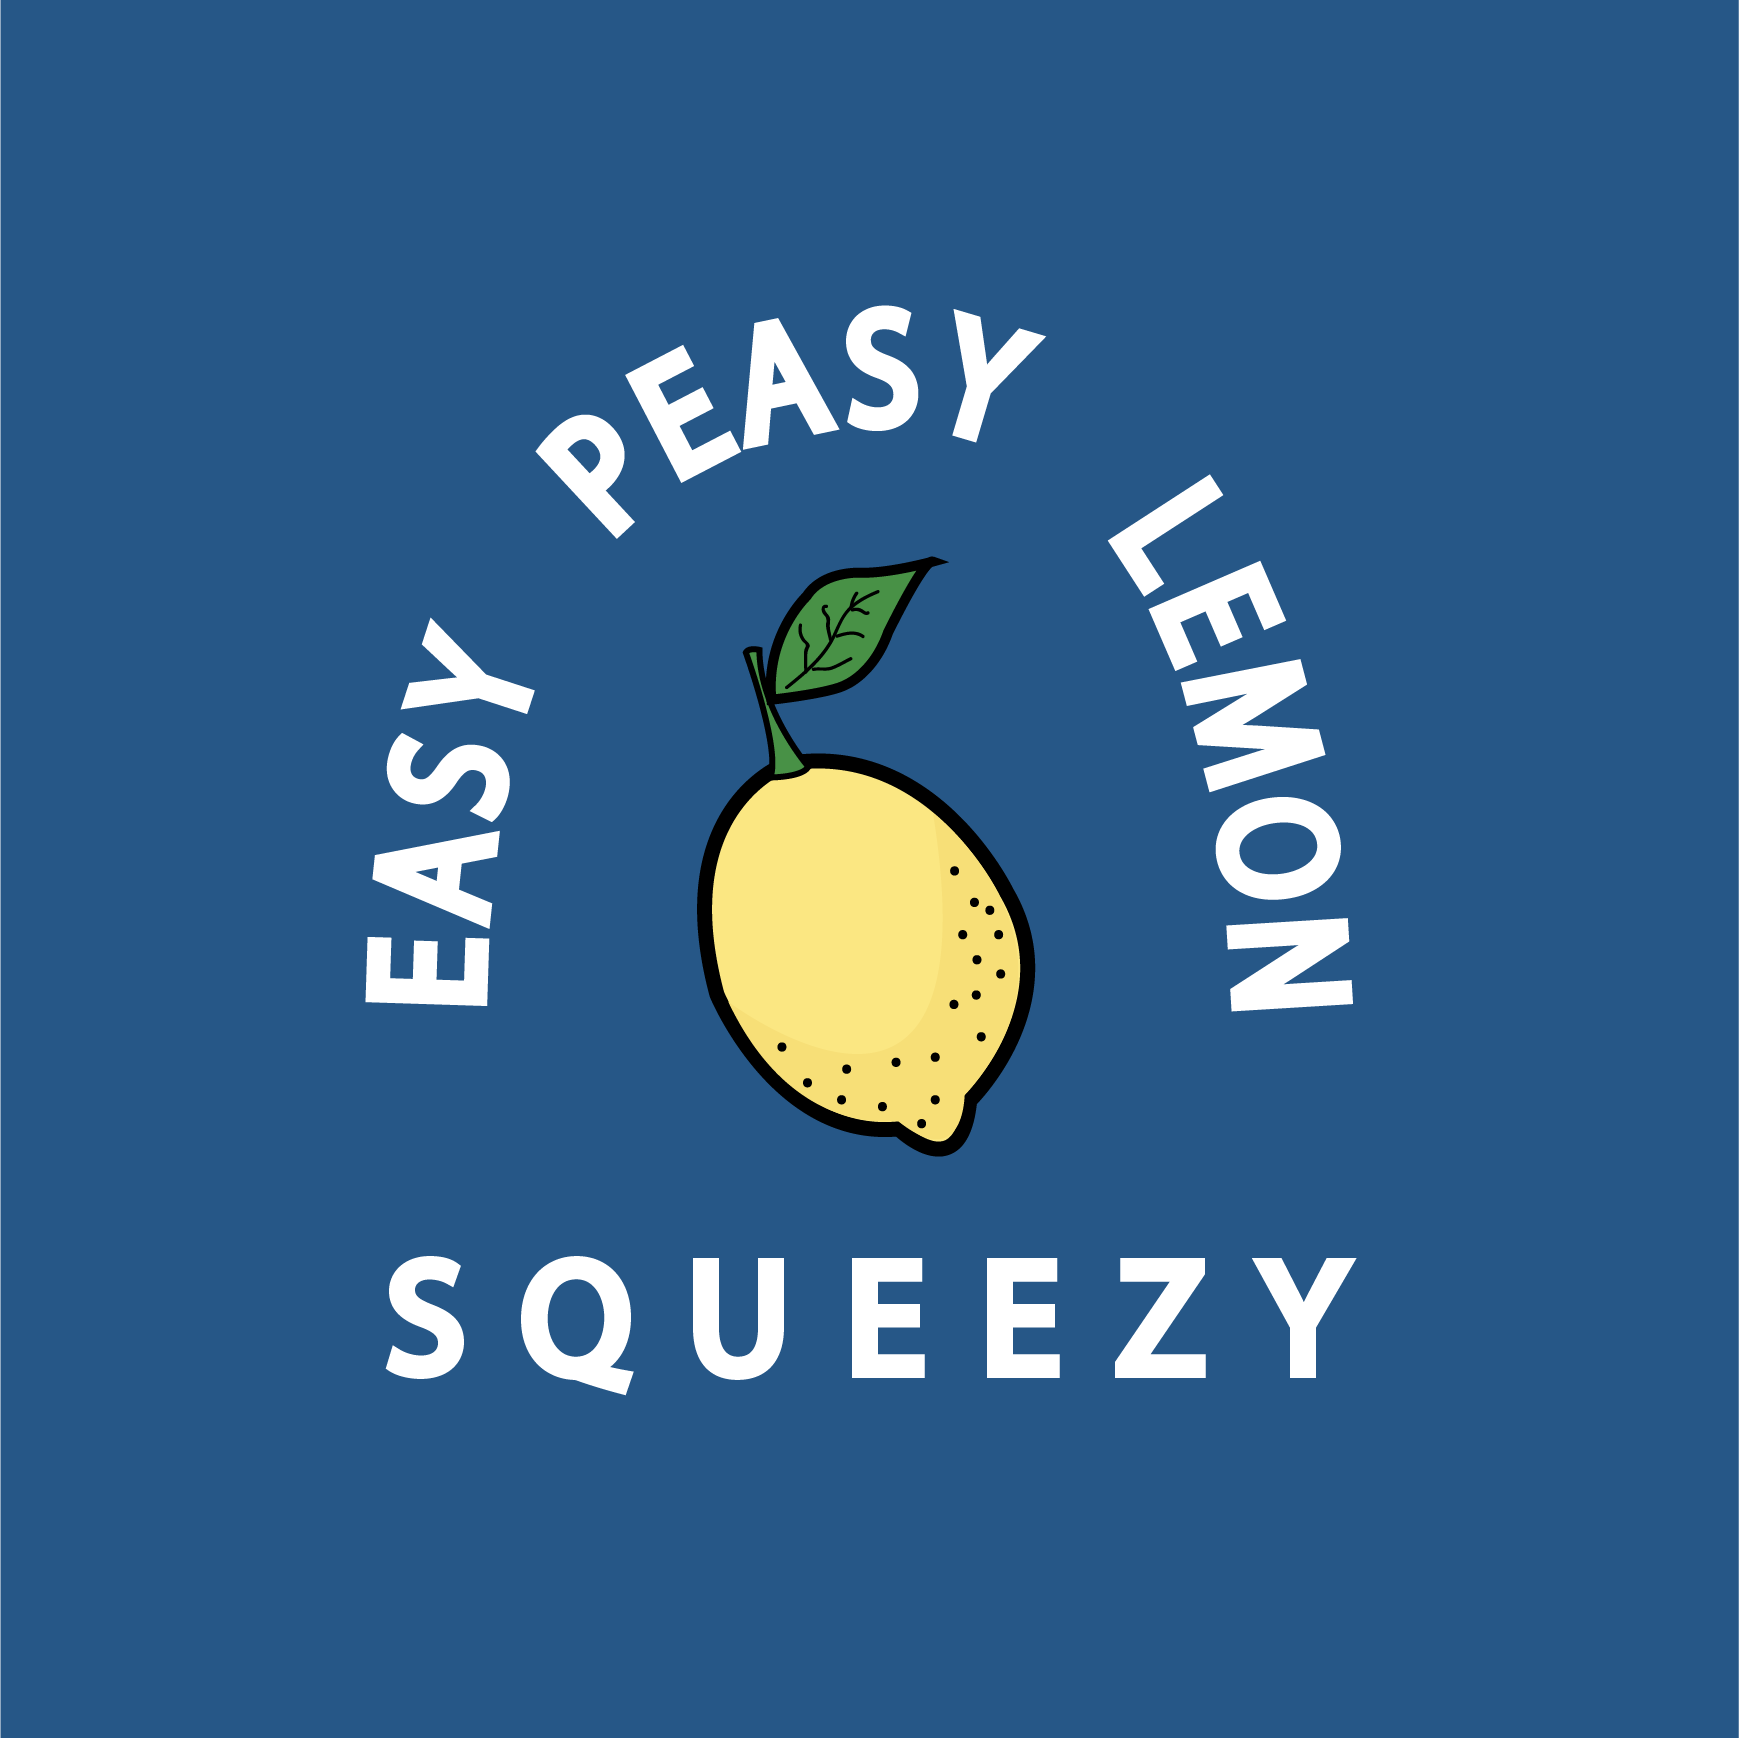 Easy Peasy Lemon Squeezy - Organic Cotton Onesie - Oat Milk Club